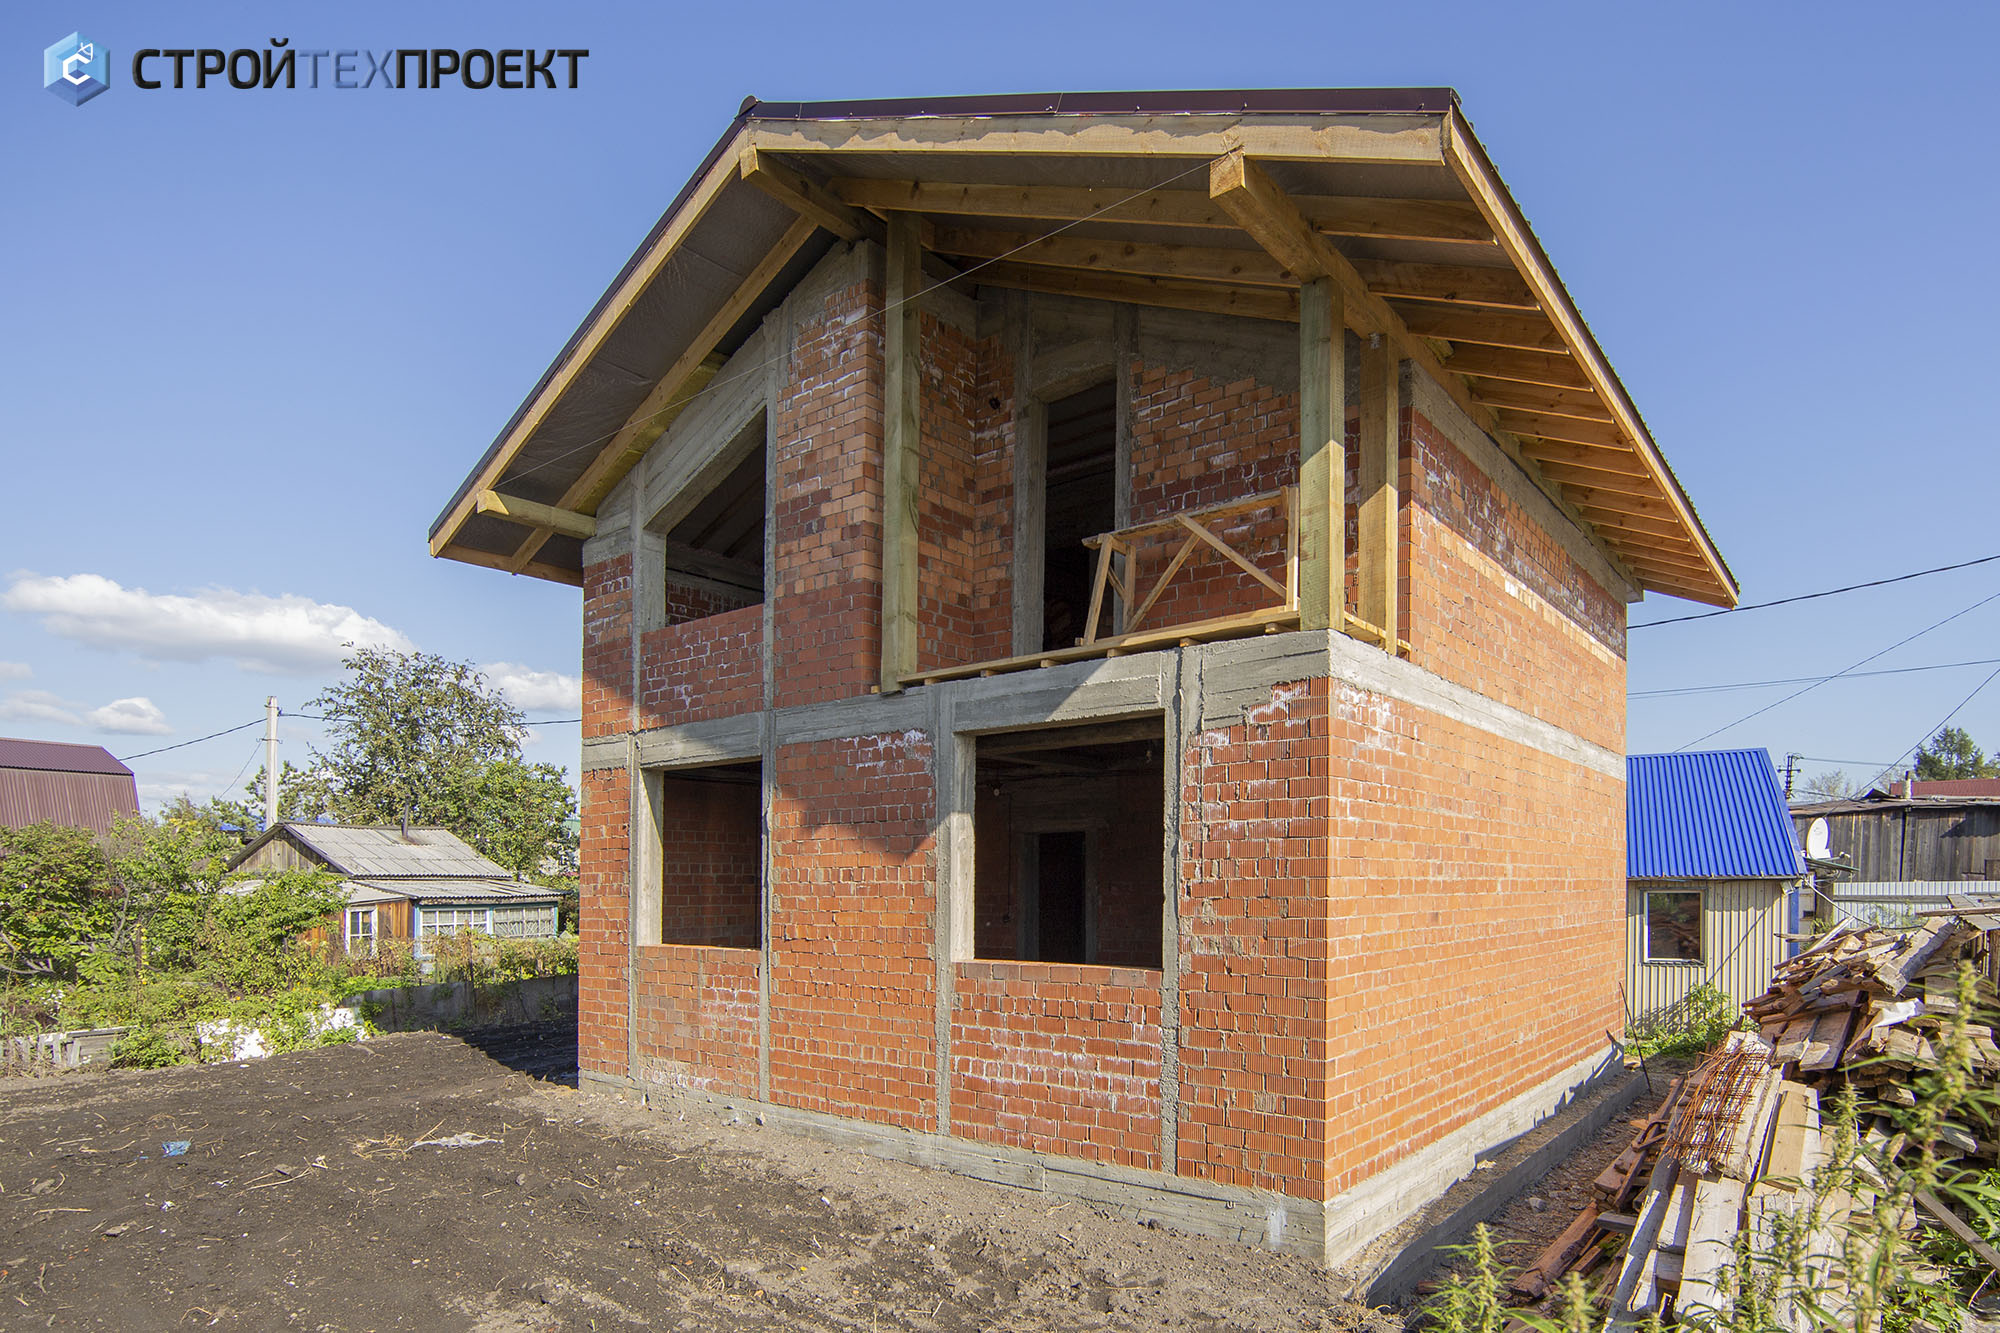 Постройка кирпичного дома по индивидуально выполненному проекту